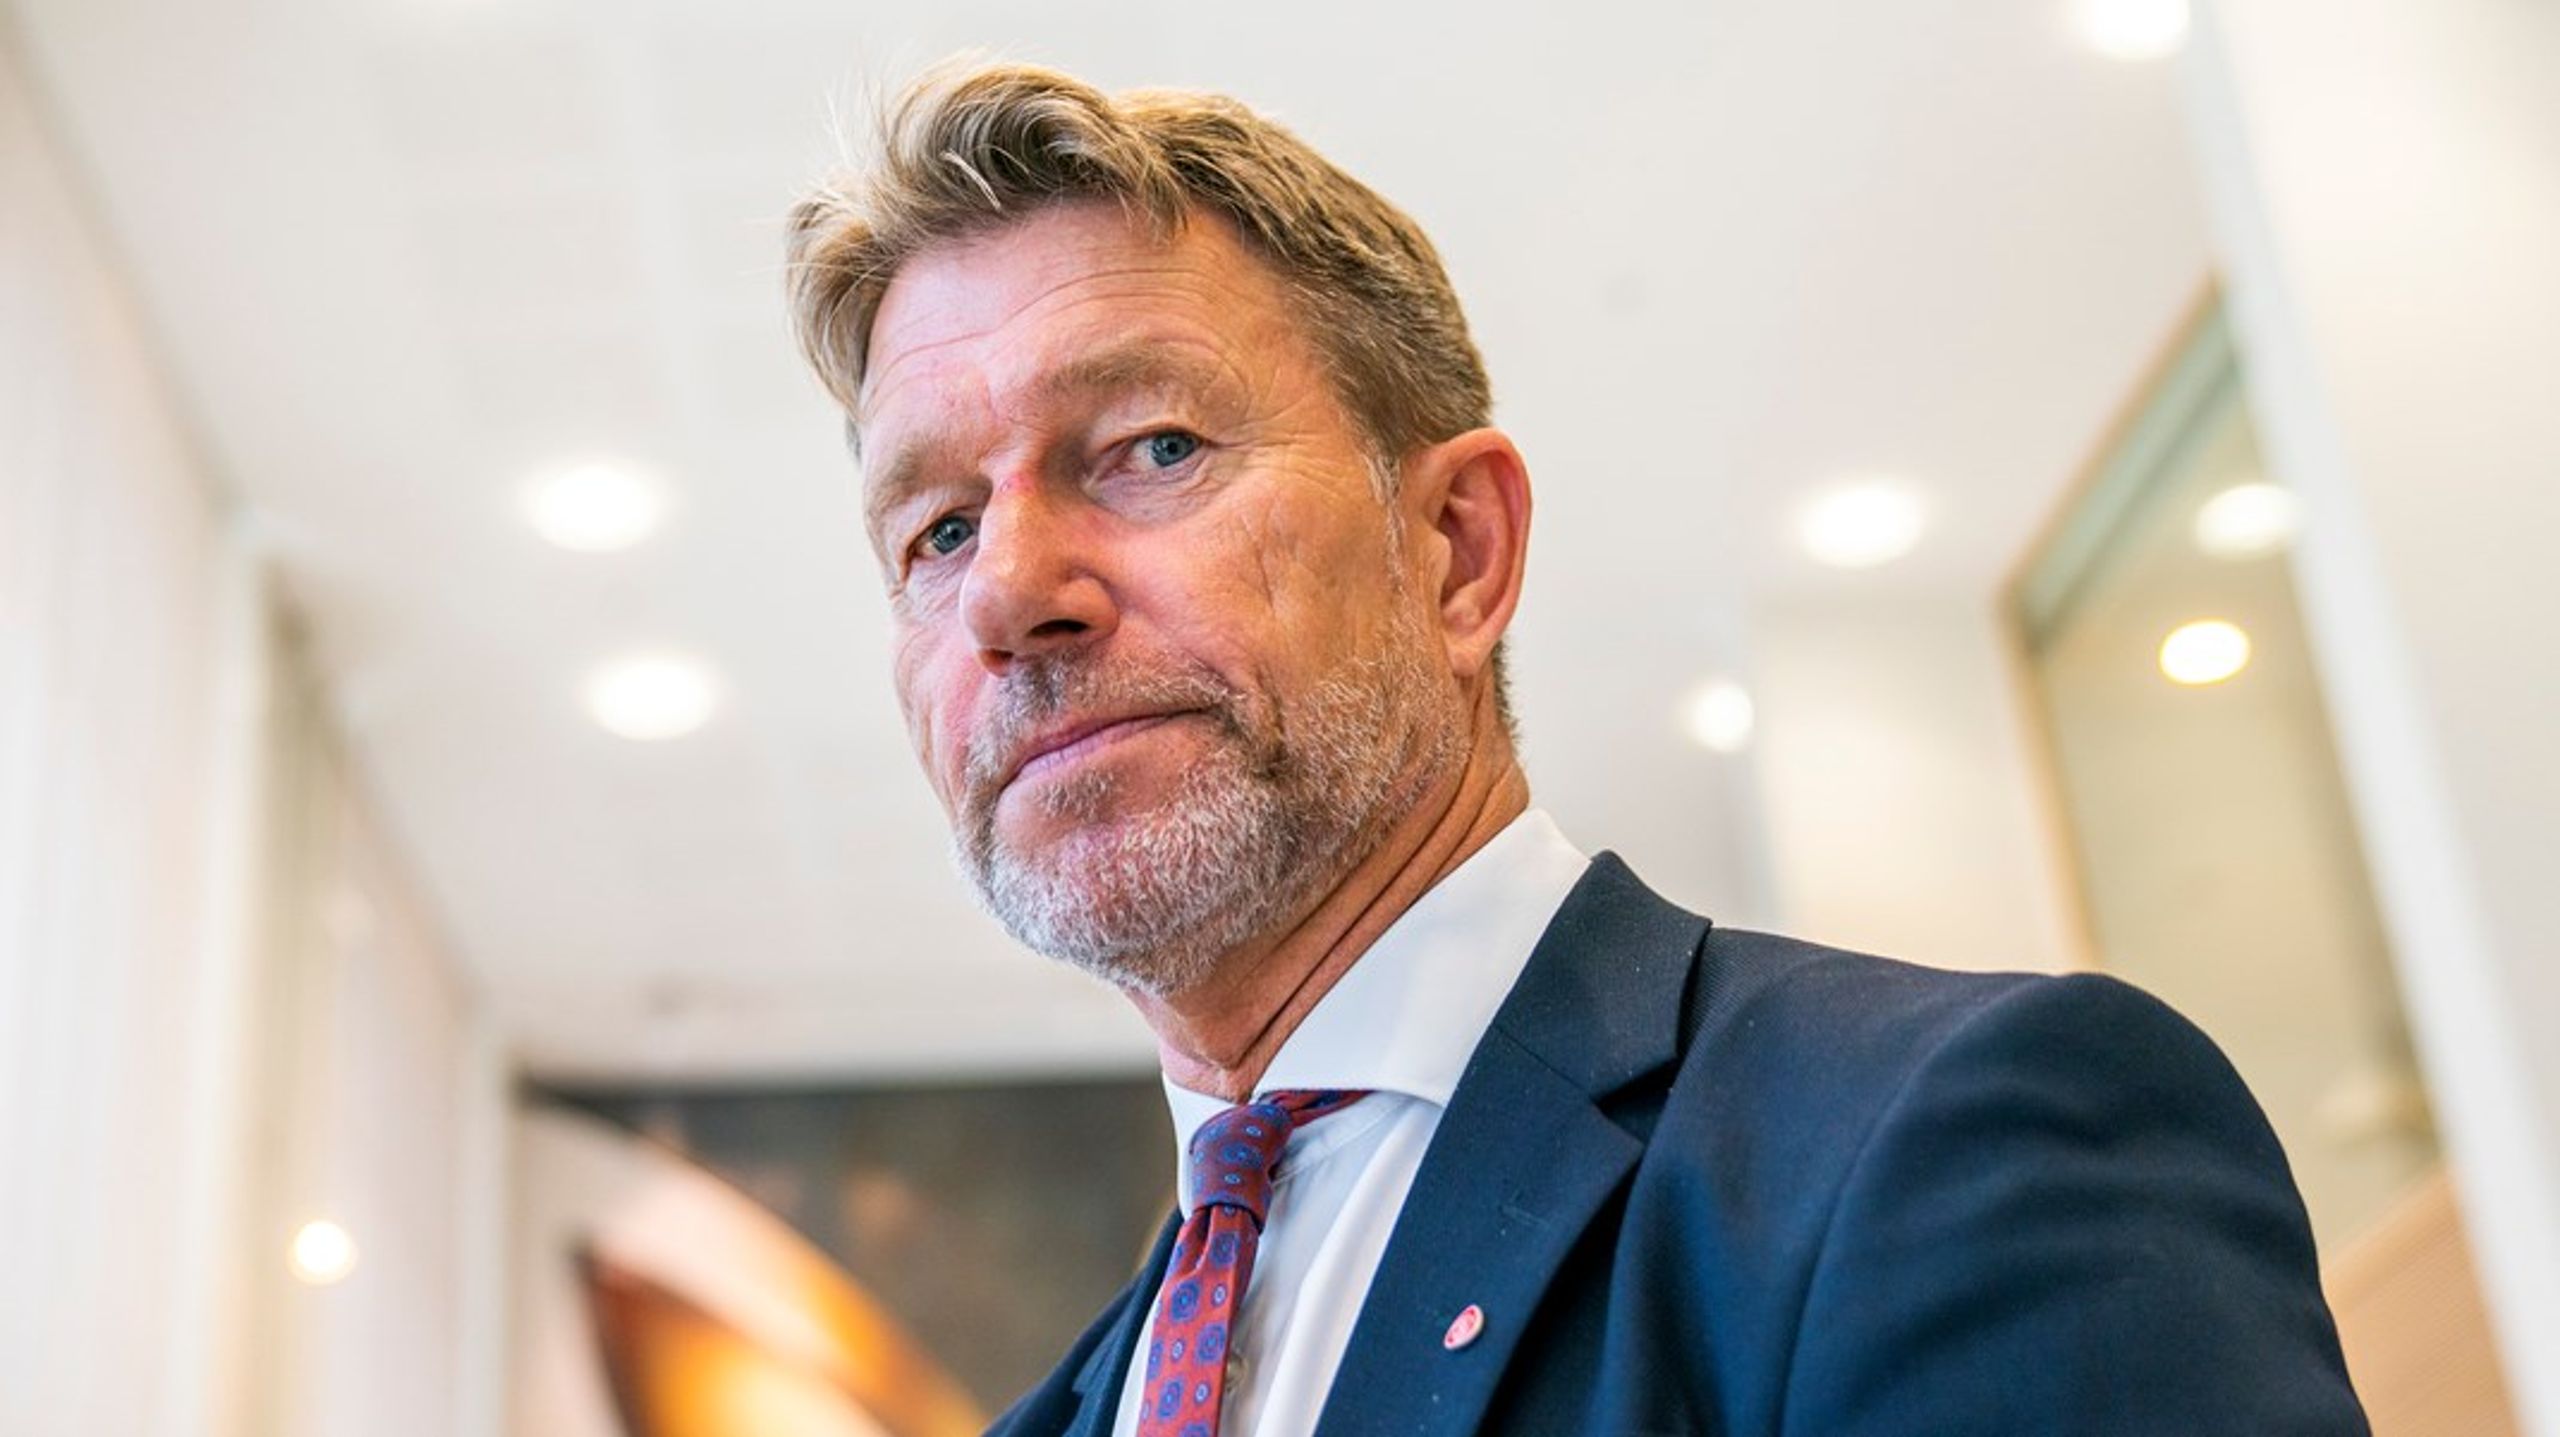 Olje- og energiminister Terje Aasland mener hans viktigste jobb er&nbsp;å sørge for at Norge har tilstrekkelig tilgang på fornybar energi til rimelige priser til norske husholdninger, norsk næringsliv og norsk industri.